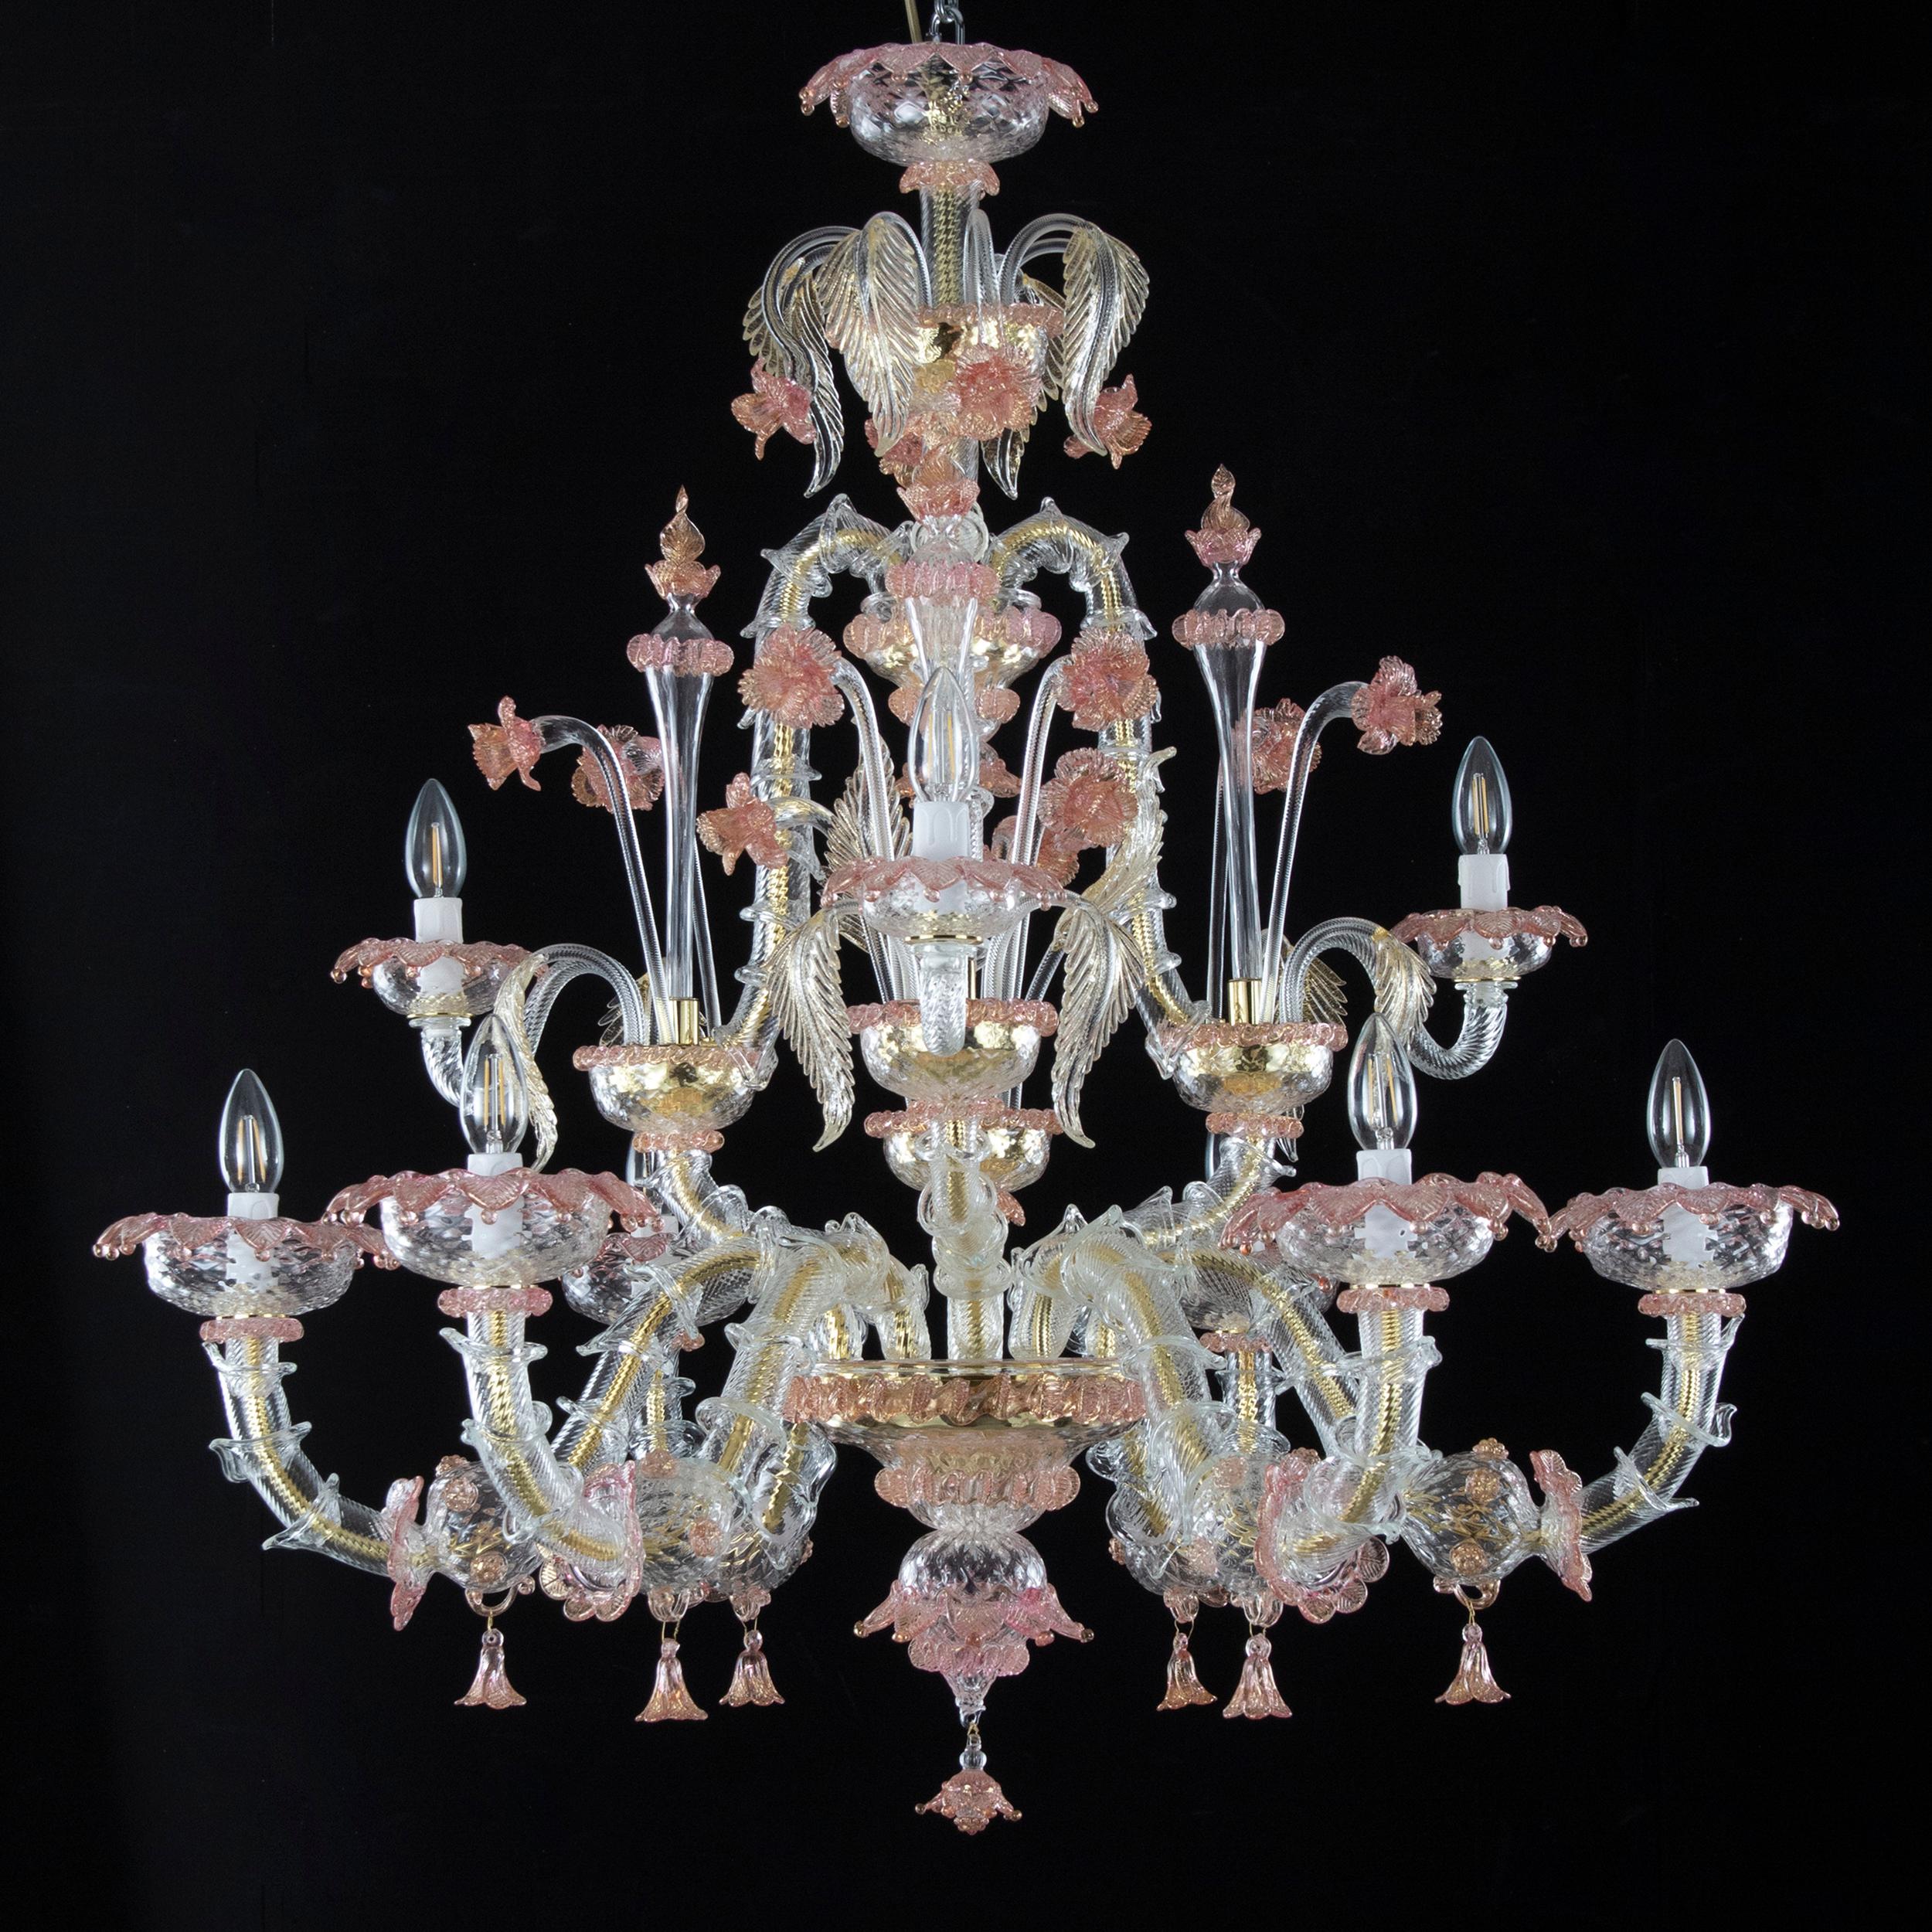 Der Kronleuchter aus Muranoglas im Rezzonico-Stil ist ein romantisches Beleuchtungsobjekt, inspiriert von den luxuriösen Hallen der venezianischen Gebäude am Canal Grande.
Die Farben, die floralen Verzierungen, die Rezzonico-Arme, die